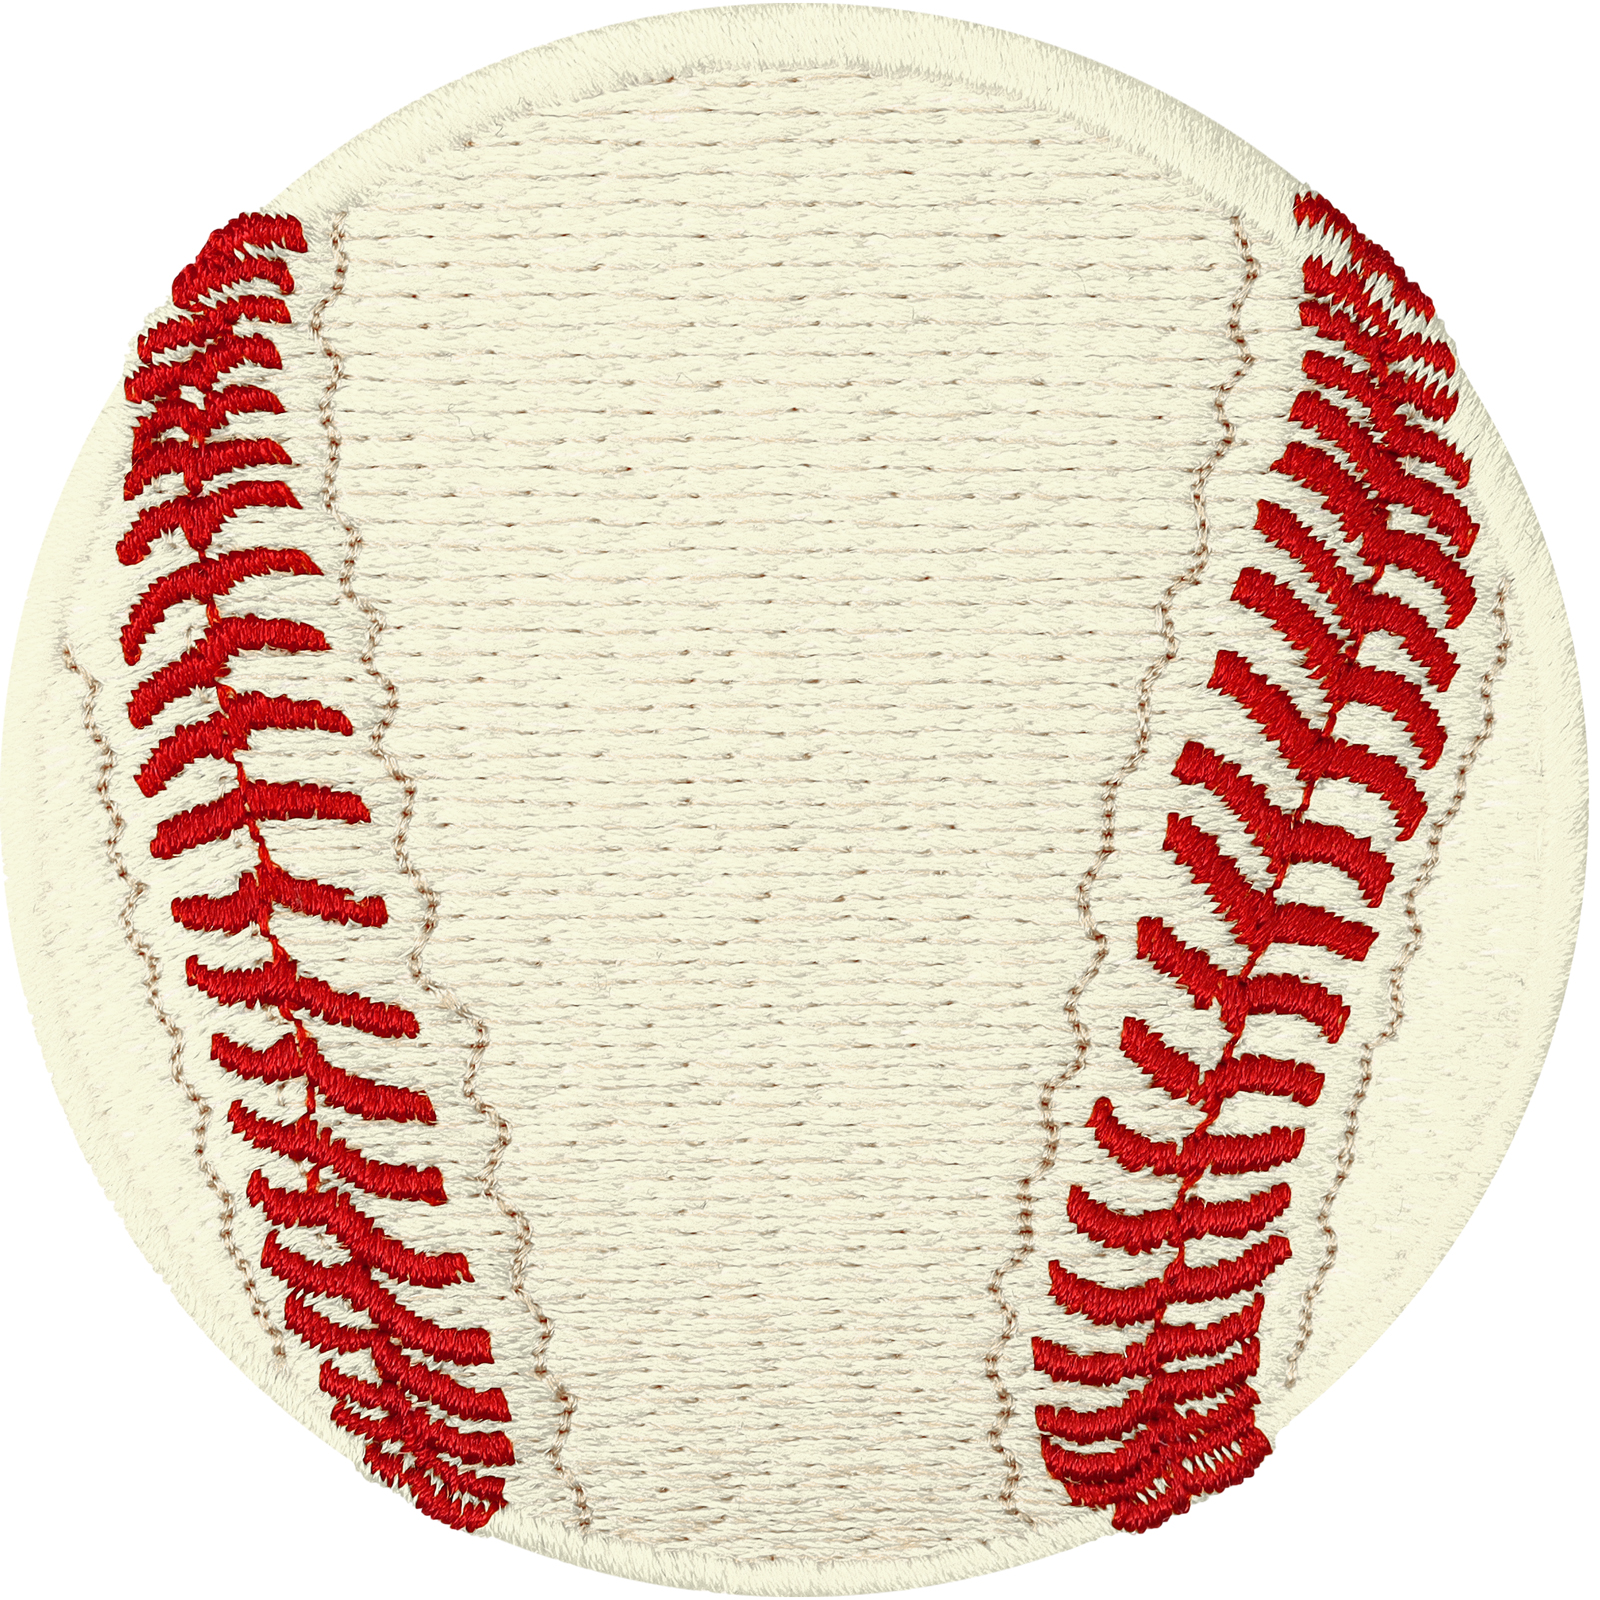 Baseball - Patch